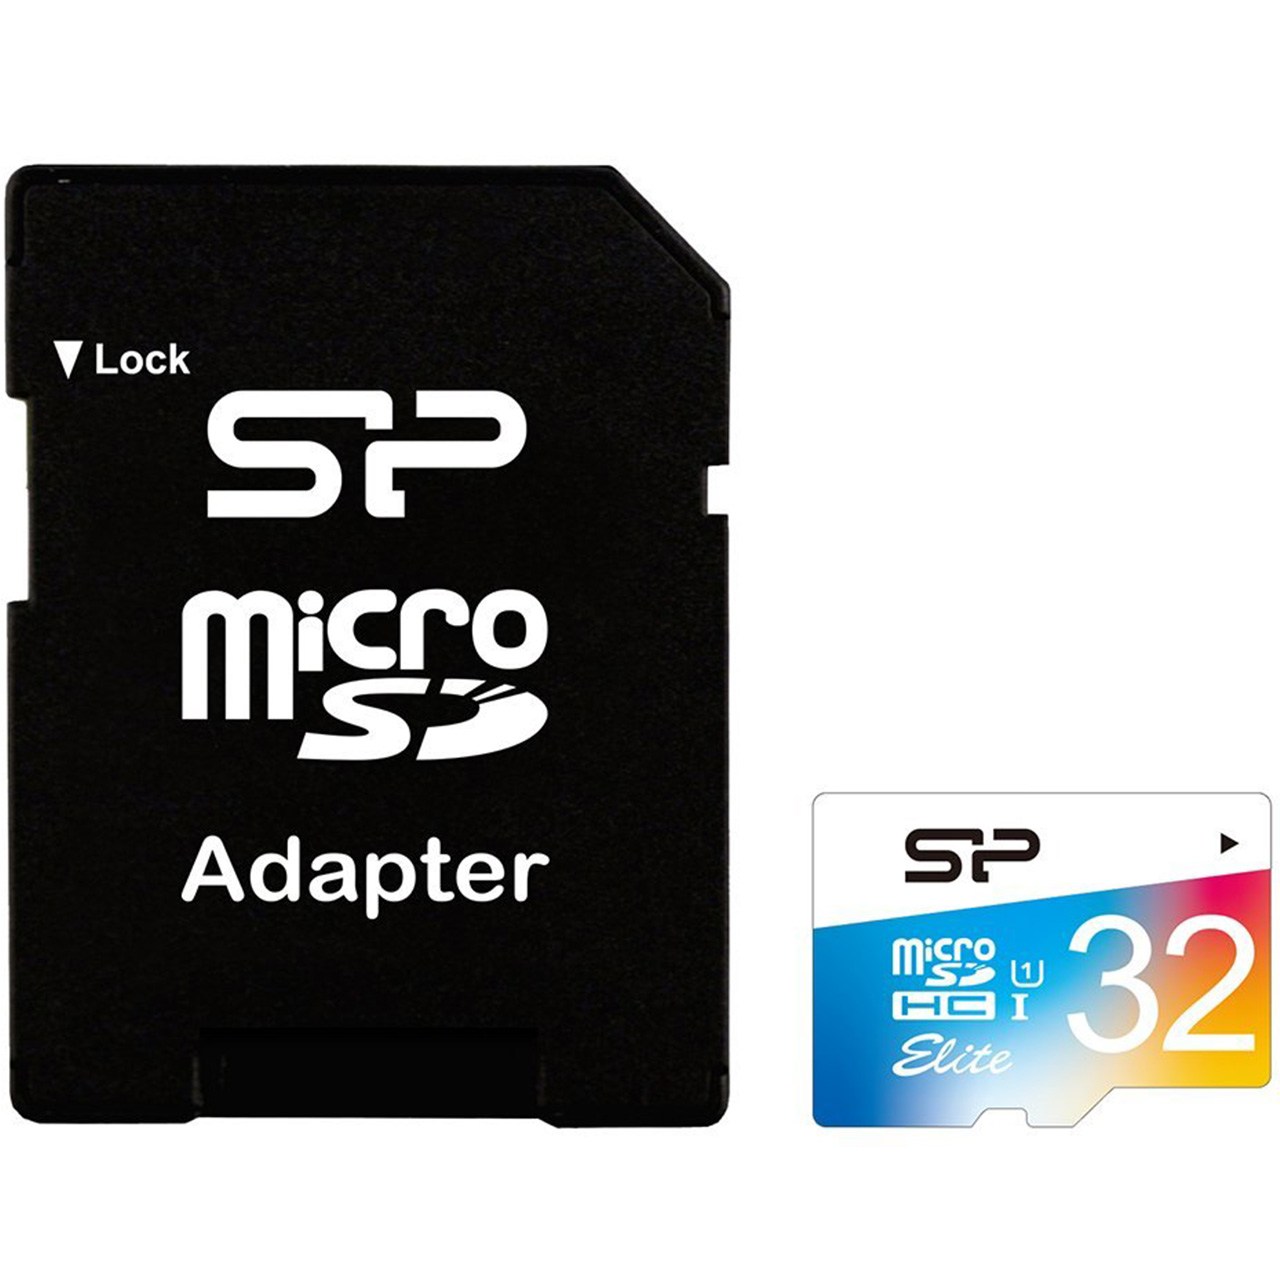 نقد و بررسی کارت حافظه microSDHC سیلیکون پاور مدل Color Elite کلاس 10 استاندارد UHS-I U1 سرعت 85MBps همراه با آداپتور SD ظرفیت 32 گیگابایت توسط خریداران